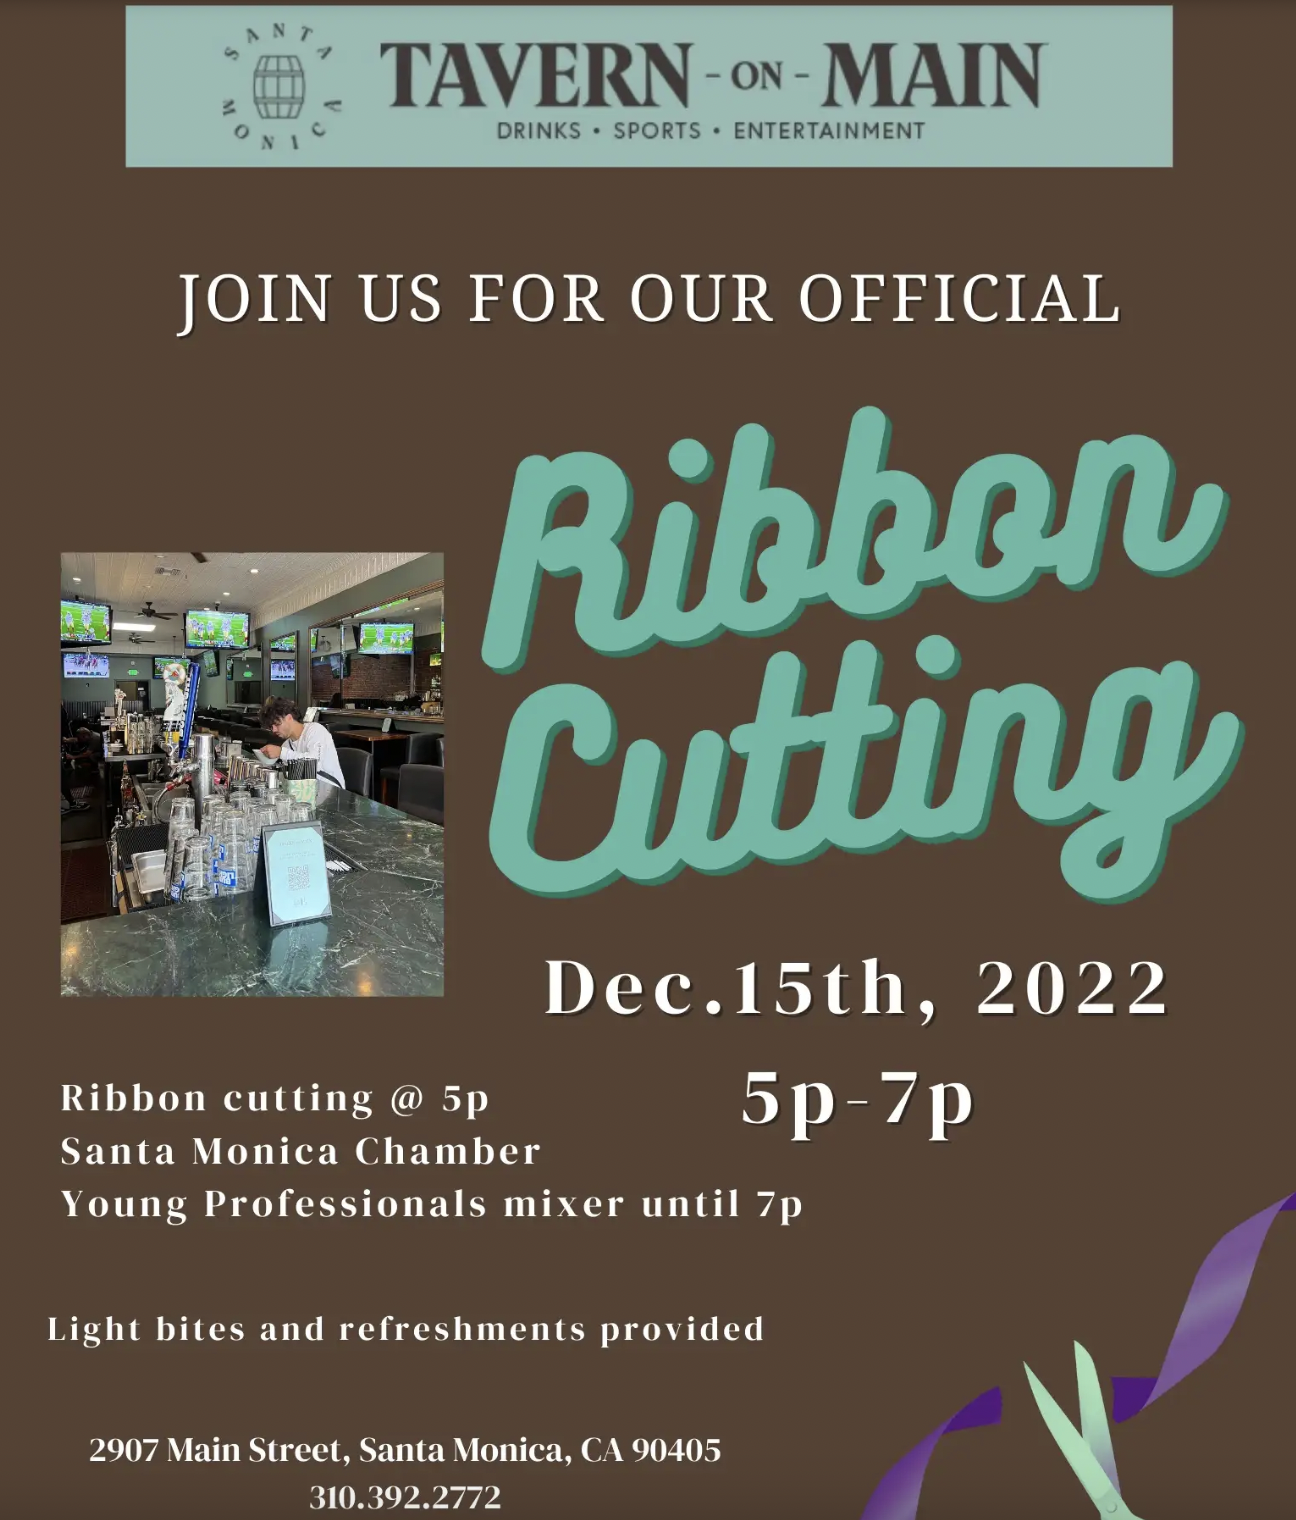 Ribbon Cutting at Tavern on Main